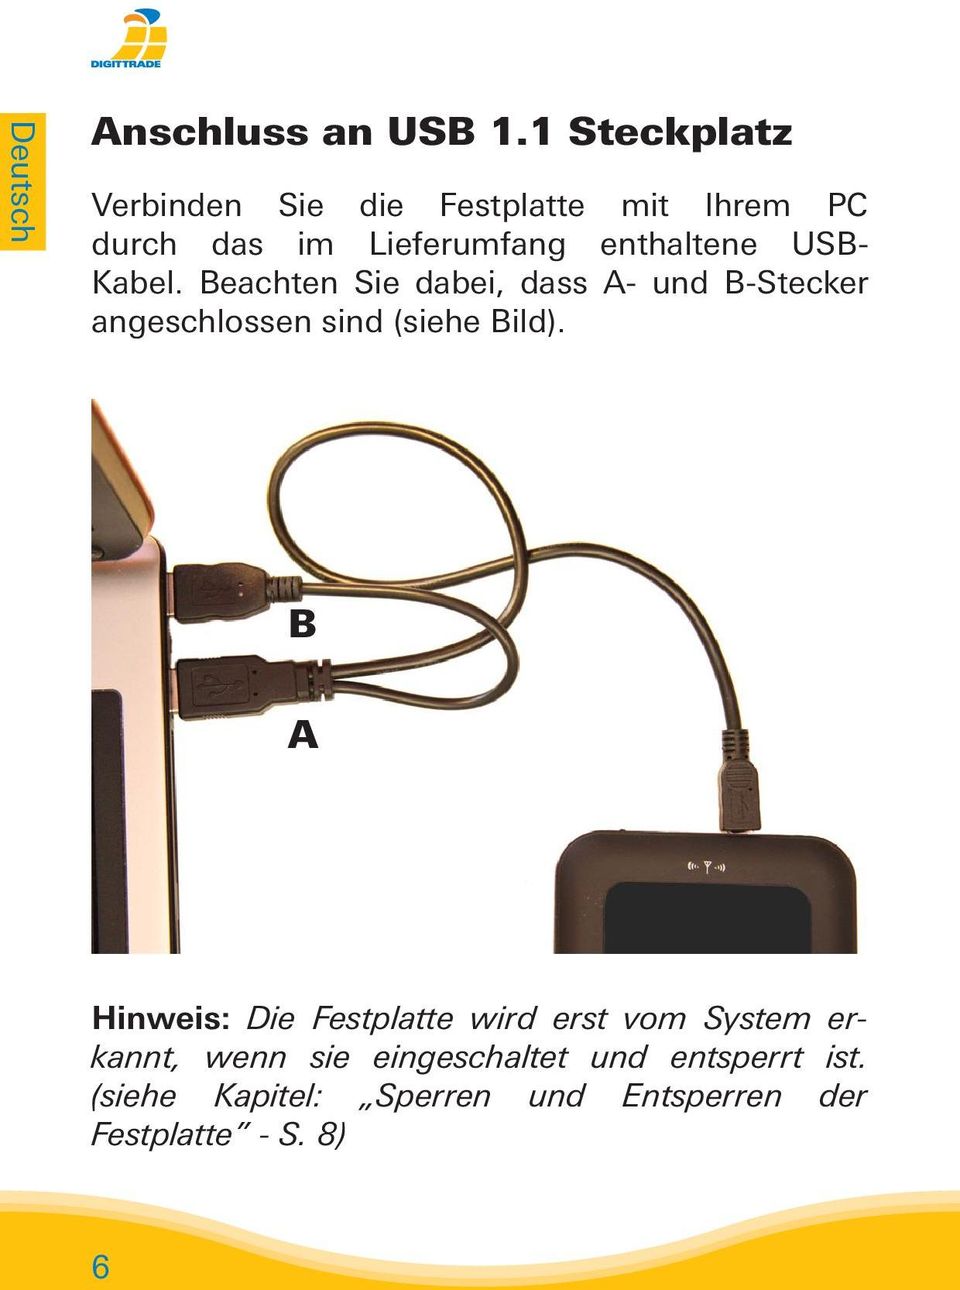 USB- Kabel. Beachten Sie dabei, dass A- und B-Stecker angeschlossen sind (siehe Bild).